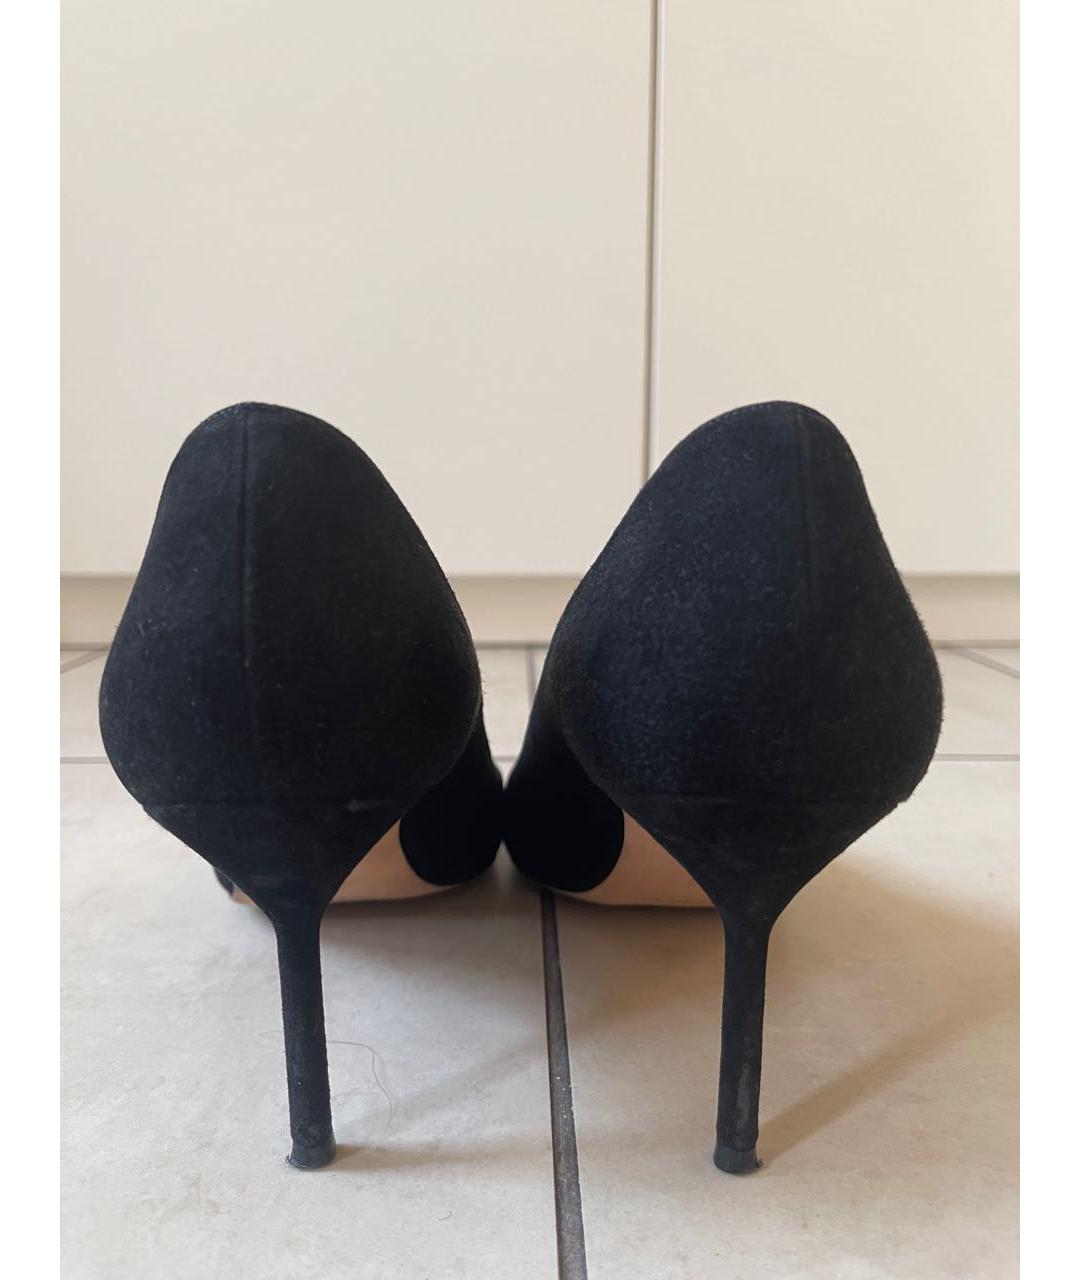 MANOLO BLAHNIK Черные замшевые туфли, фото 4